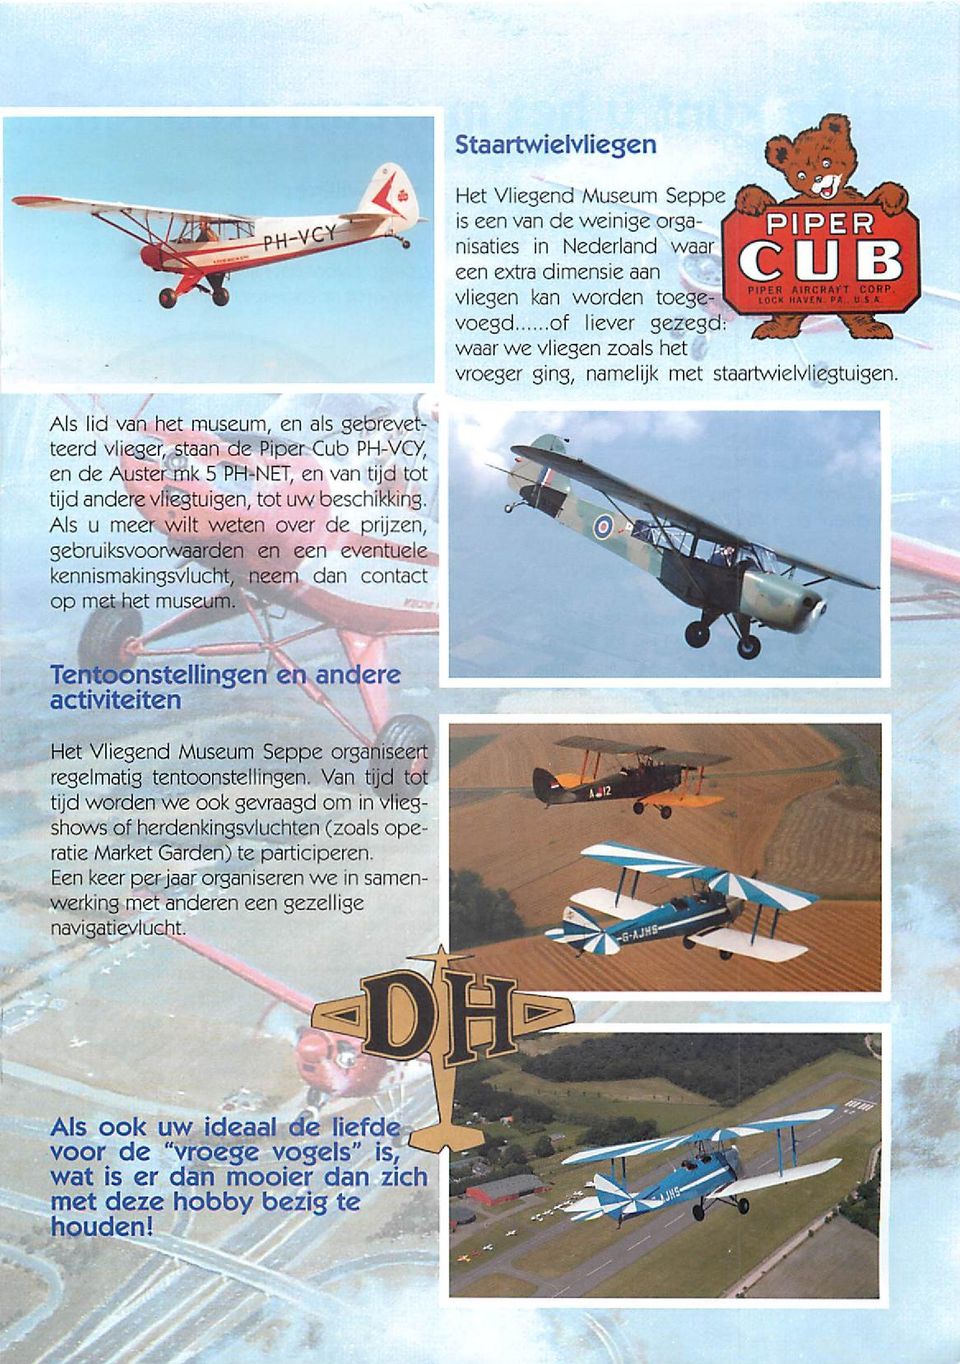 Als lid van het museum, en als gebrevetteerd vlieger, staan de Piper Cub PH-VCY, en de Auster mk 5 PH-NET, en van tijd tot tijd anderevliegtuigen, tot uw beschikking.